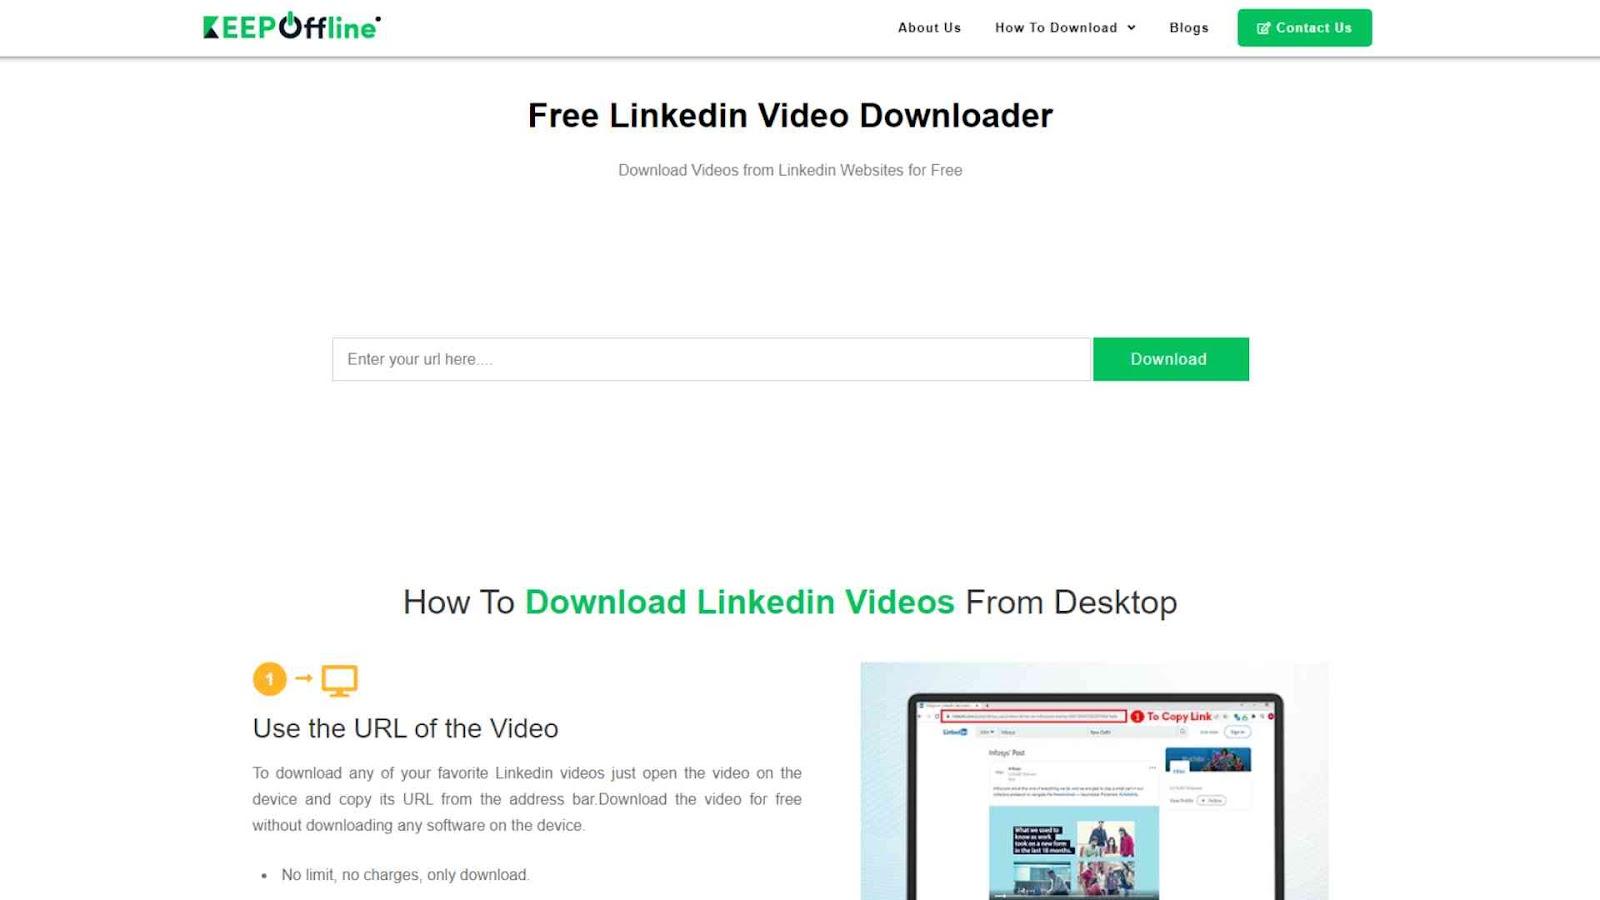 Keep Offline LinkedIn Video Downloader